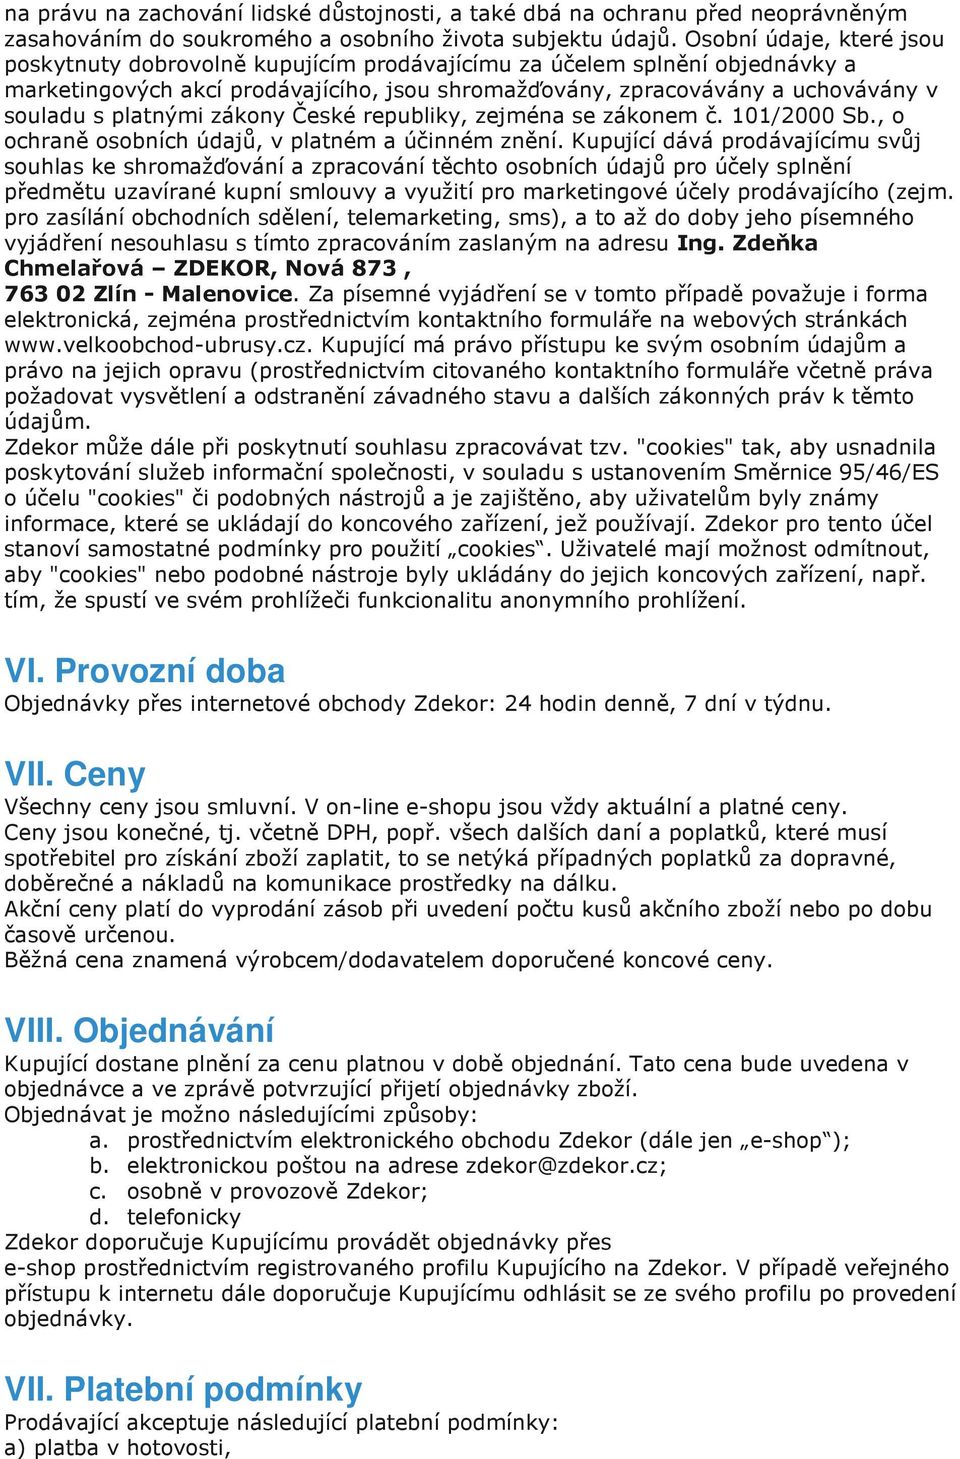 platnými zákony České republiky, zejména se zákonem č. 101/2000 Sb., o ochraně osobních údajů, v platném a účinném znění.